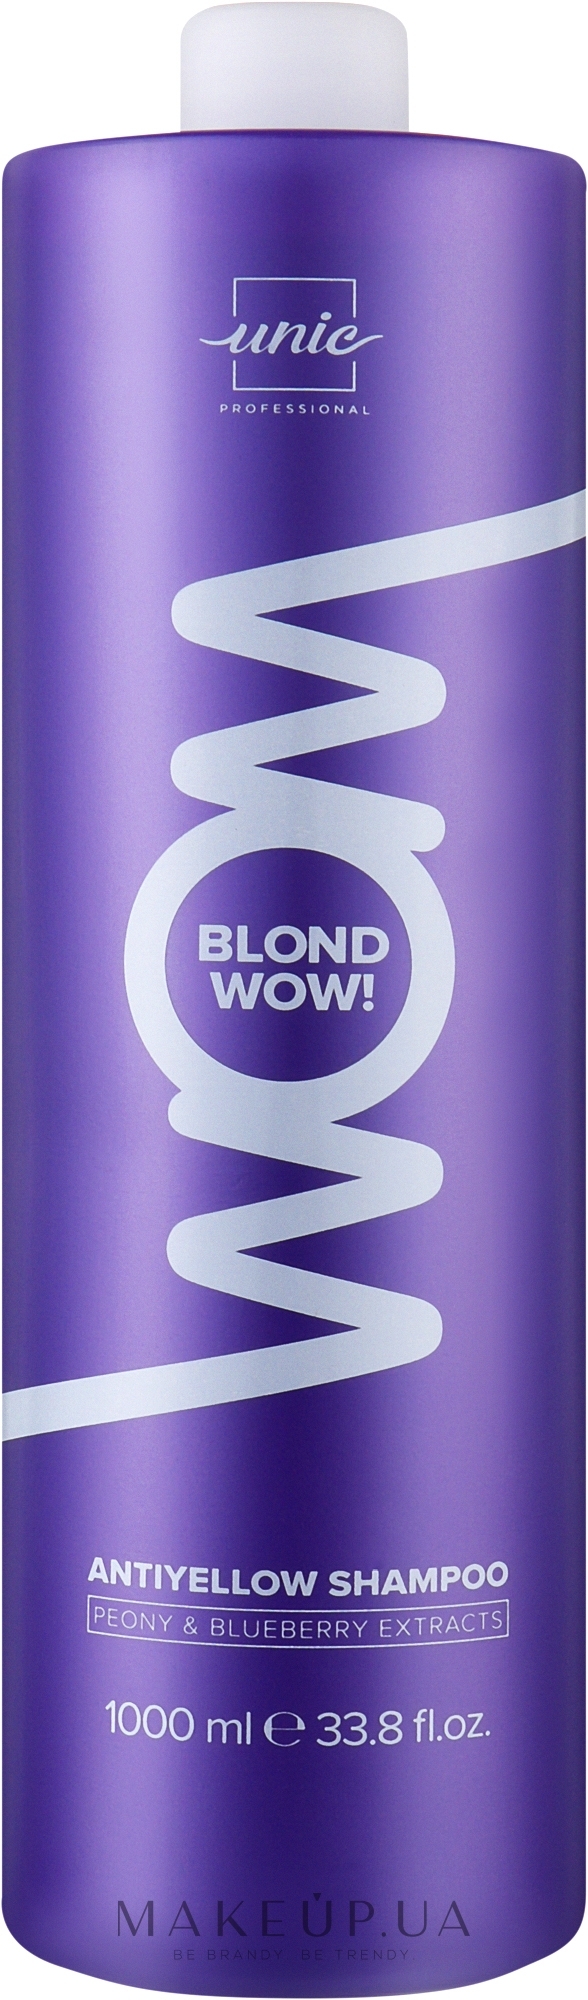 Шампунь для волосся - Unic Wow Blonde Antiyellow Shampoo — фото 1000ml